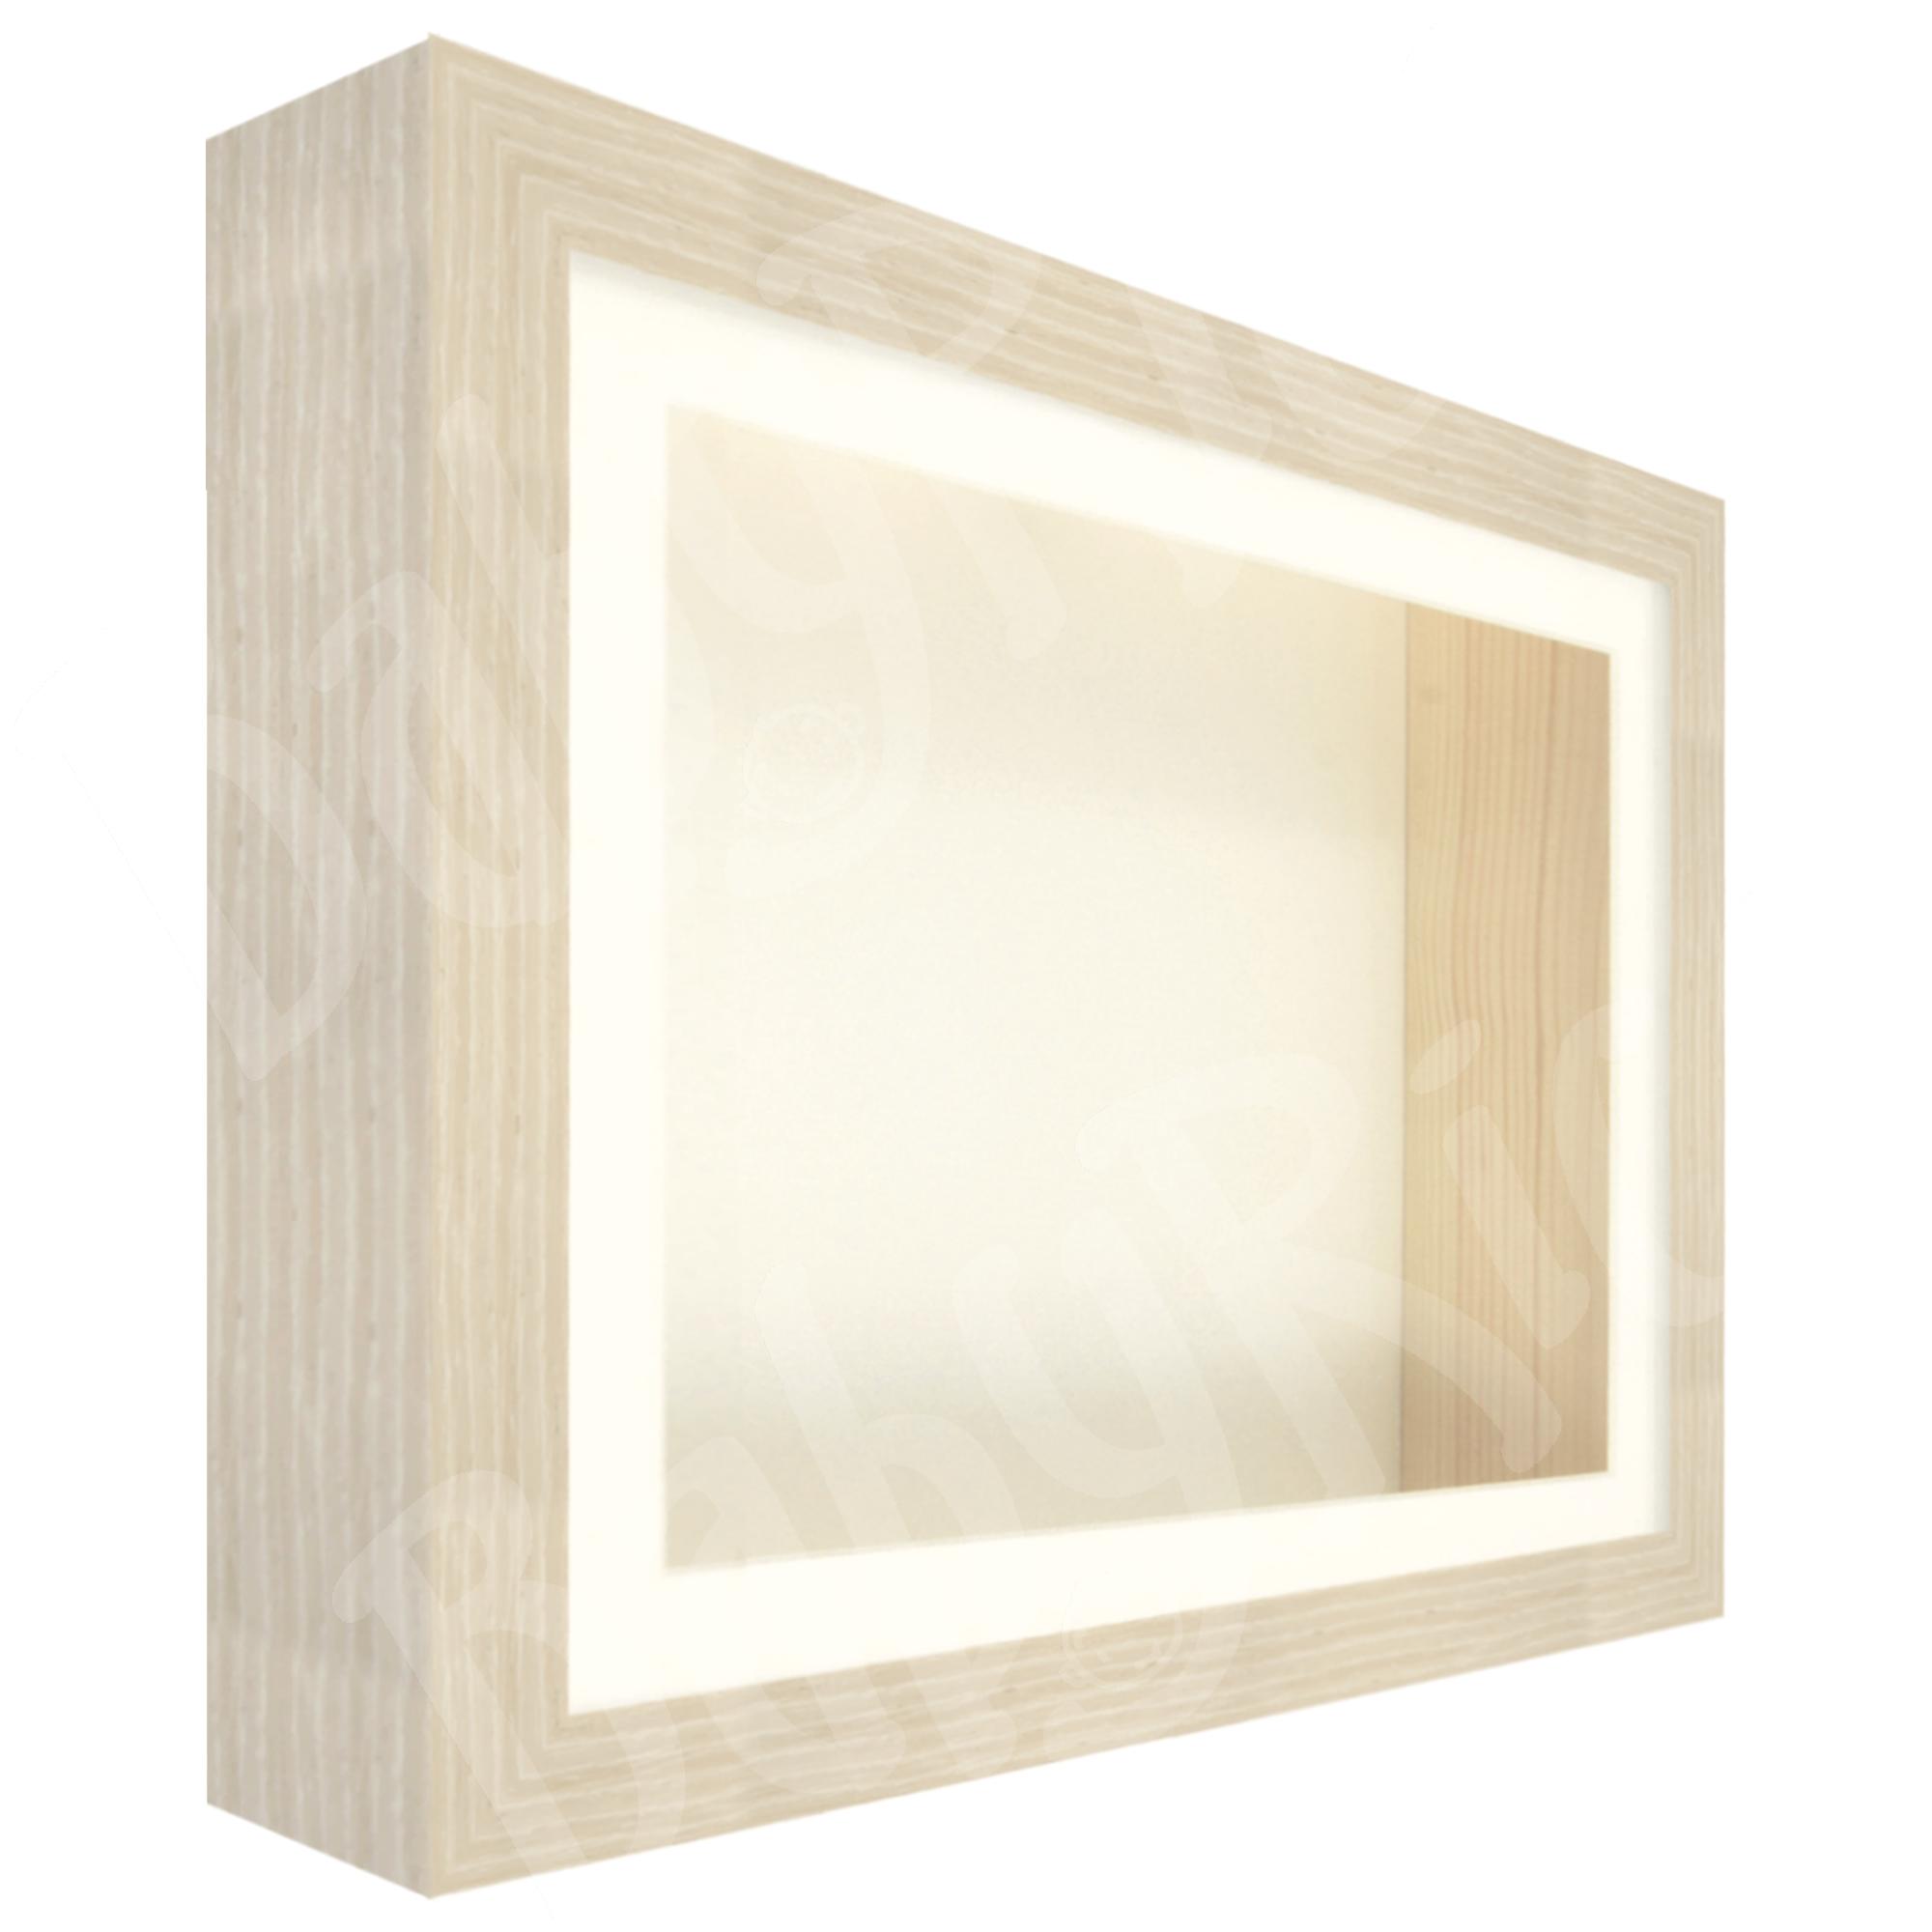 Limed Oak Veneer Box Frame, Cream Inserts